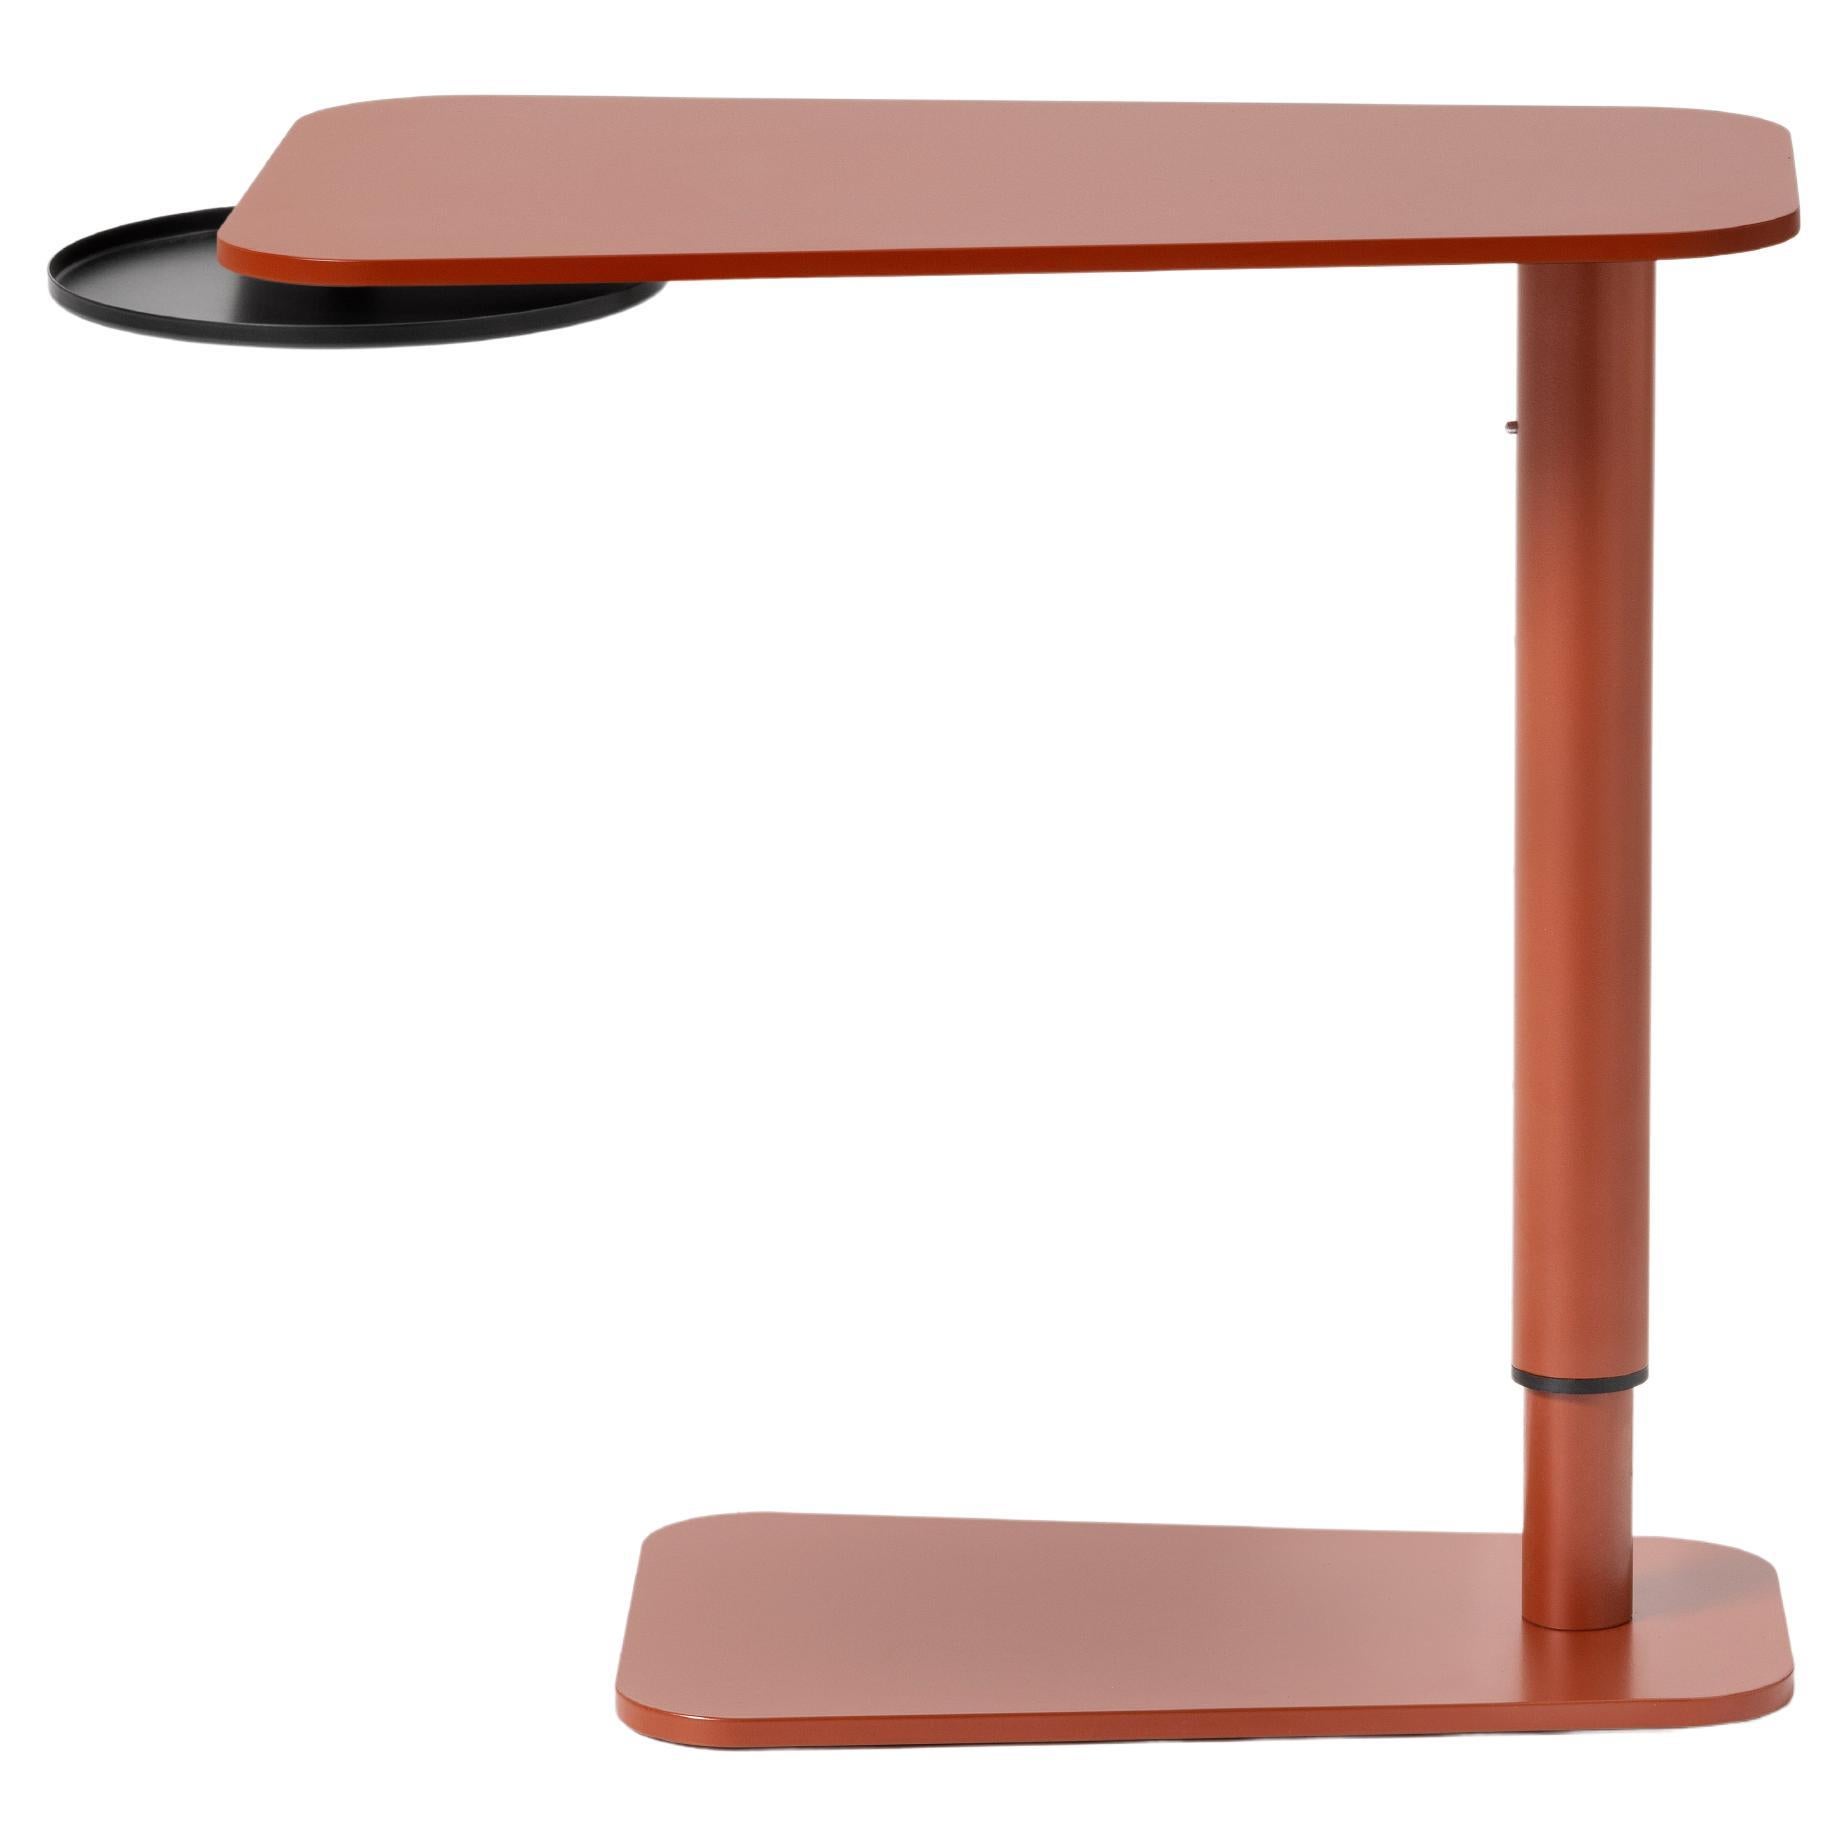 Jens Beistelltisch, Kleiner Tisch, Farbe, Metall, Design, verstellbar, Couchtisch